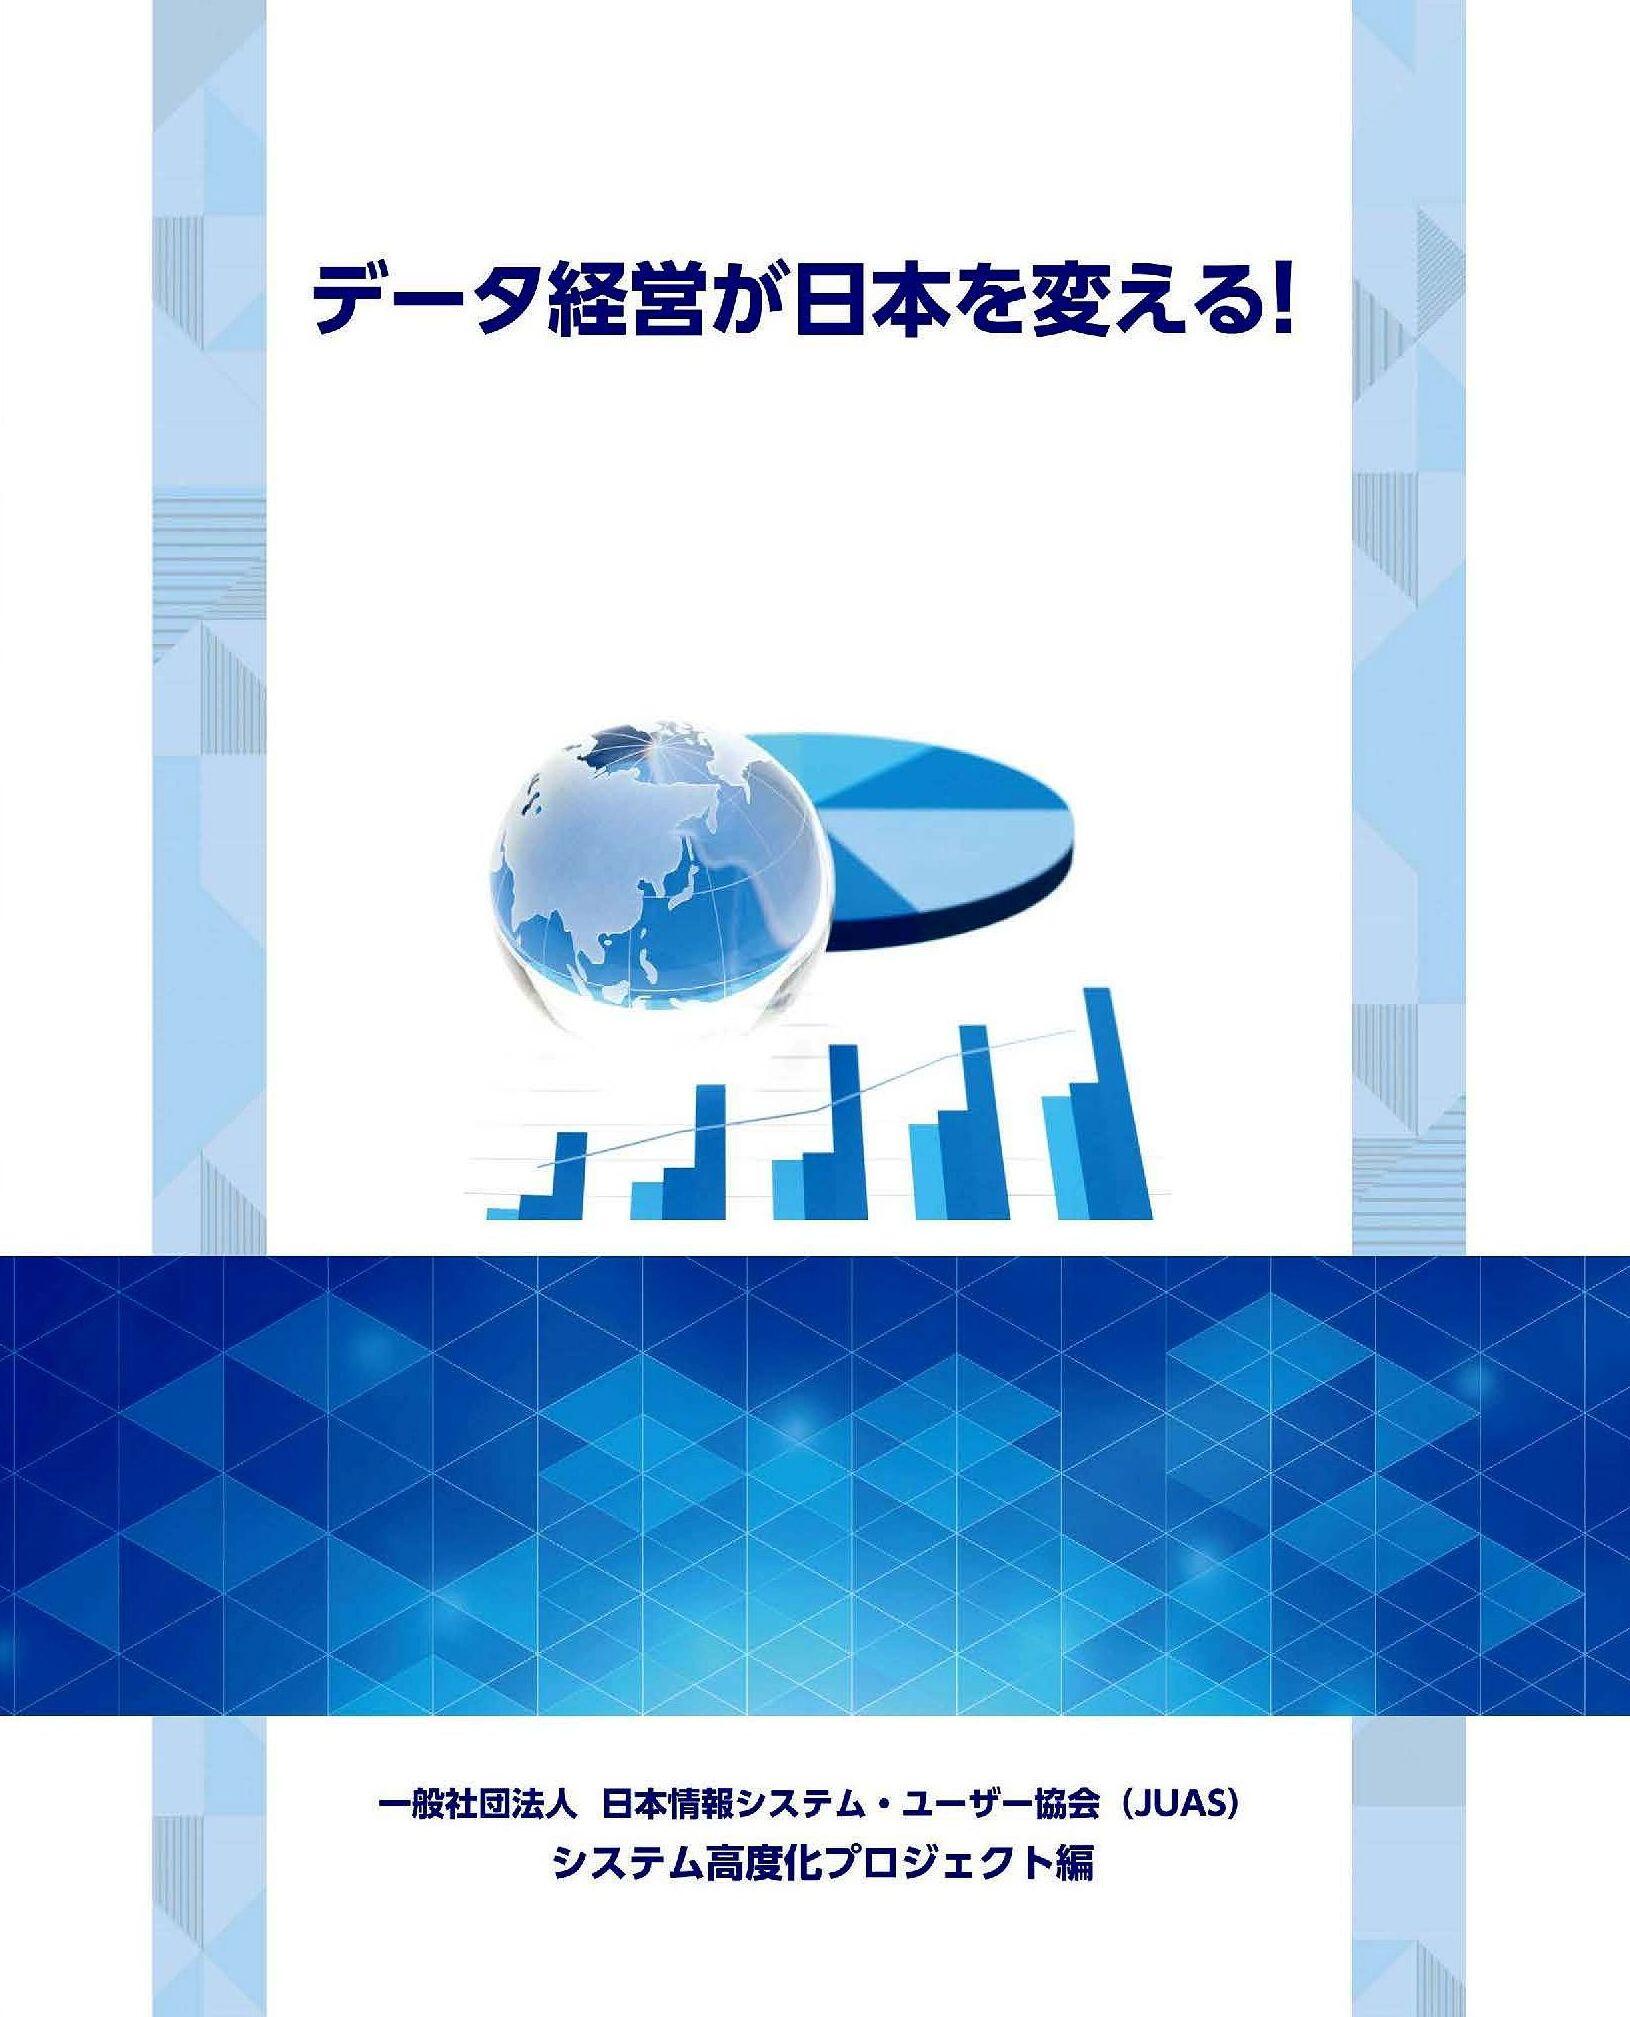 報告書「データ経営が日本を変える！」表紙